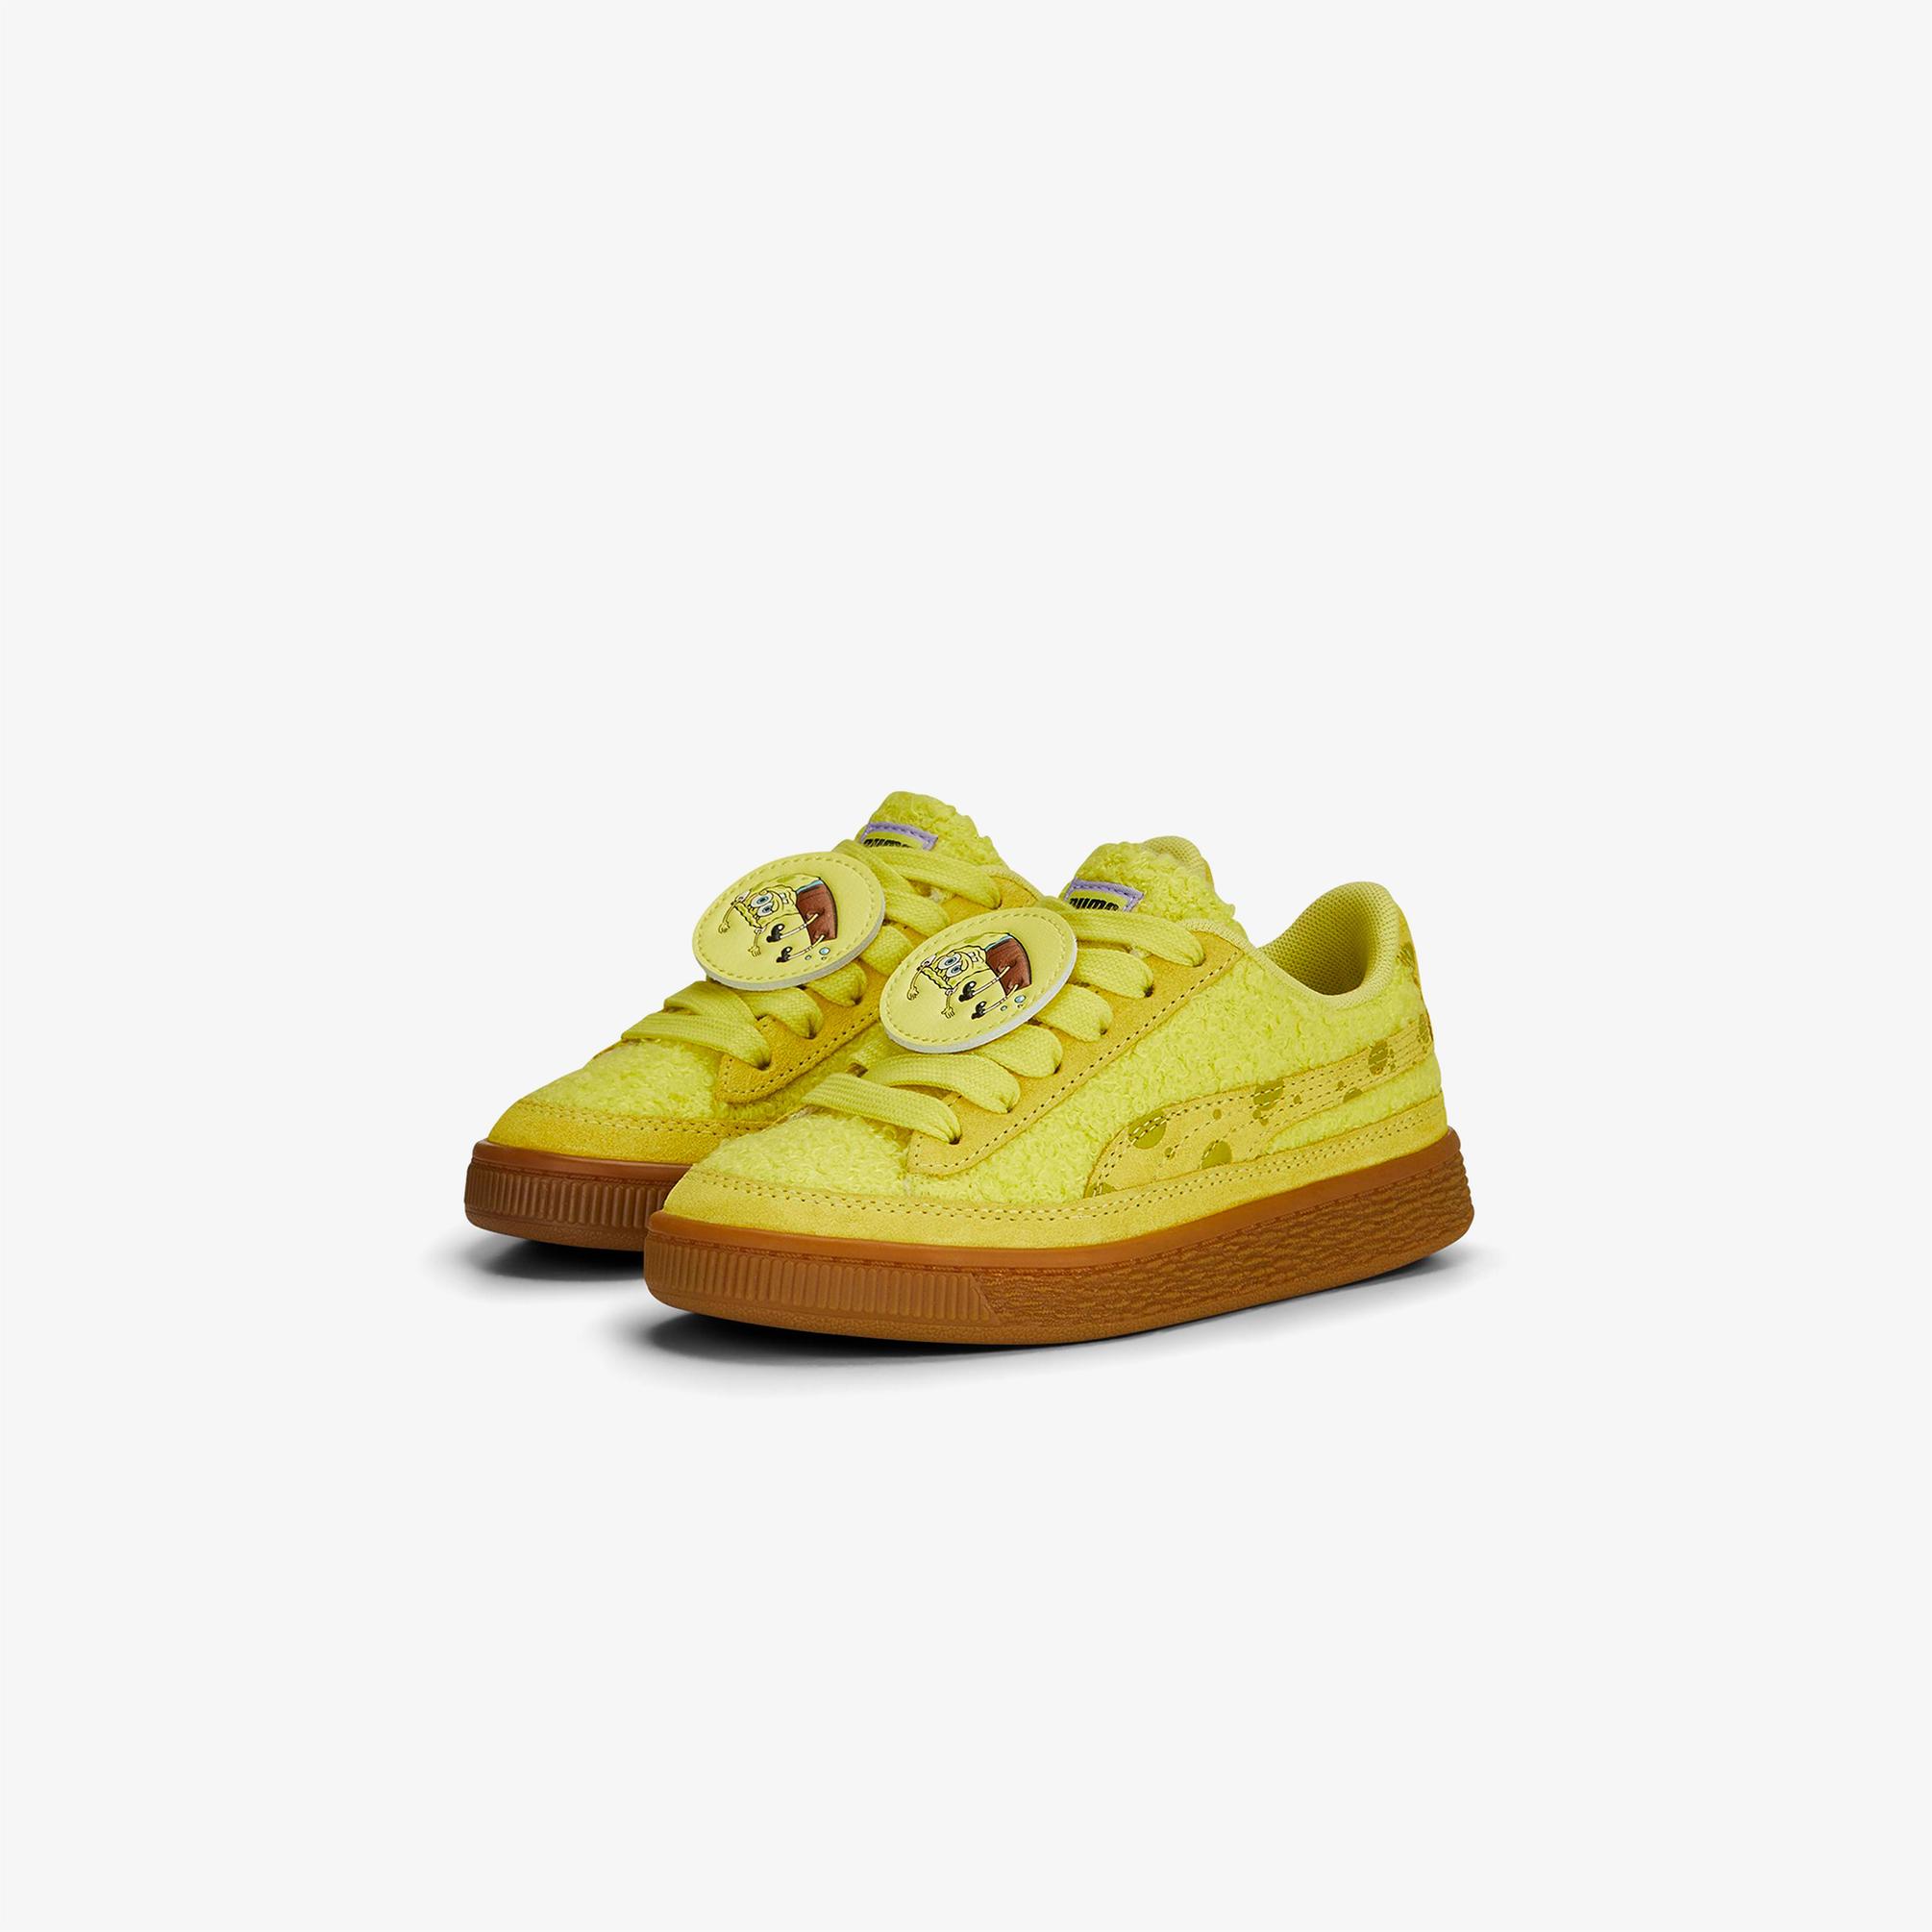  Puma x Spongebob PS Suede Çocuk Sarı Spor Ayakkabı